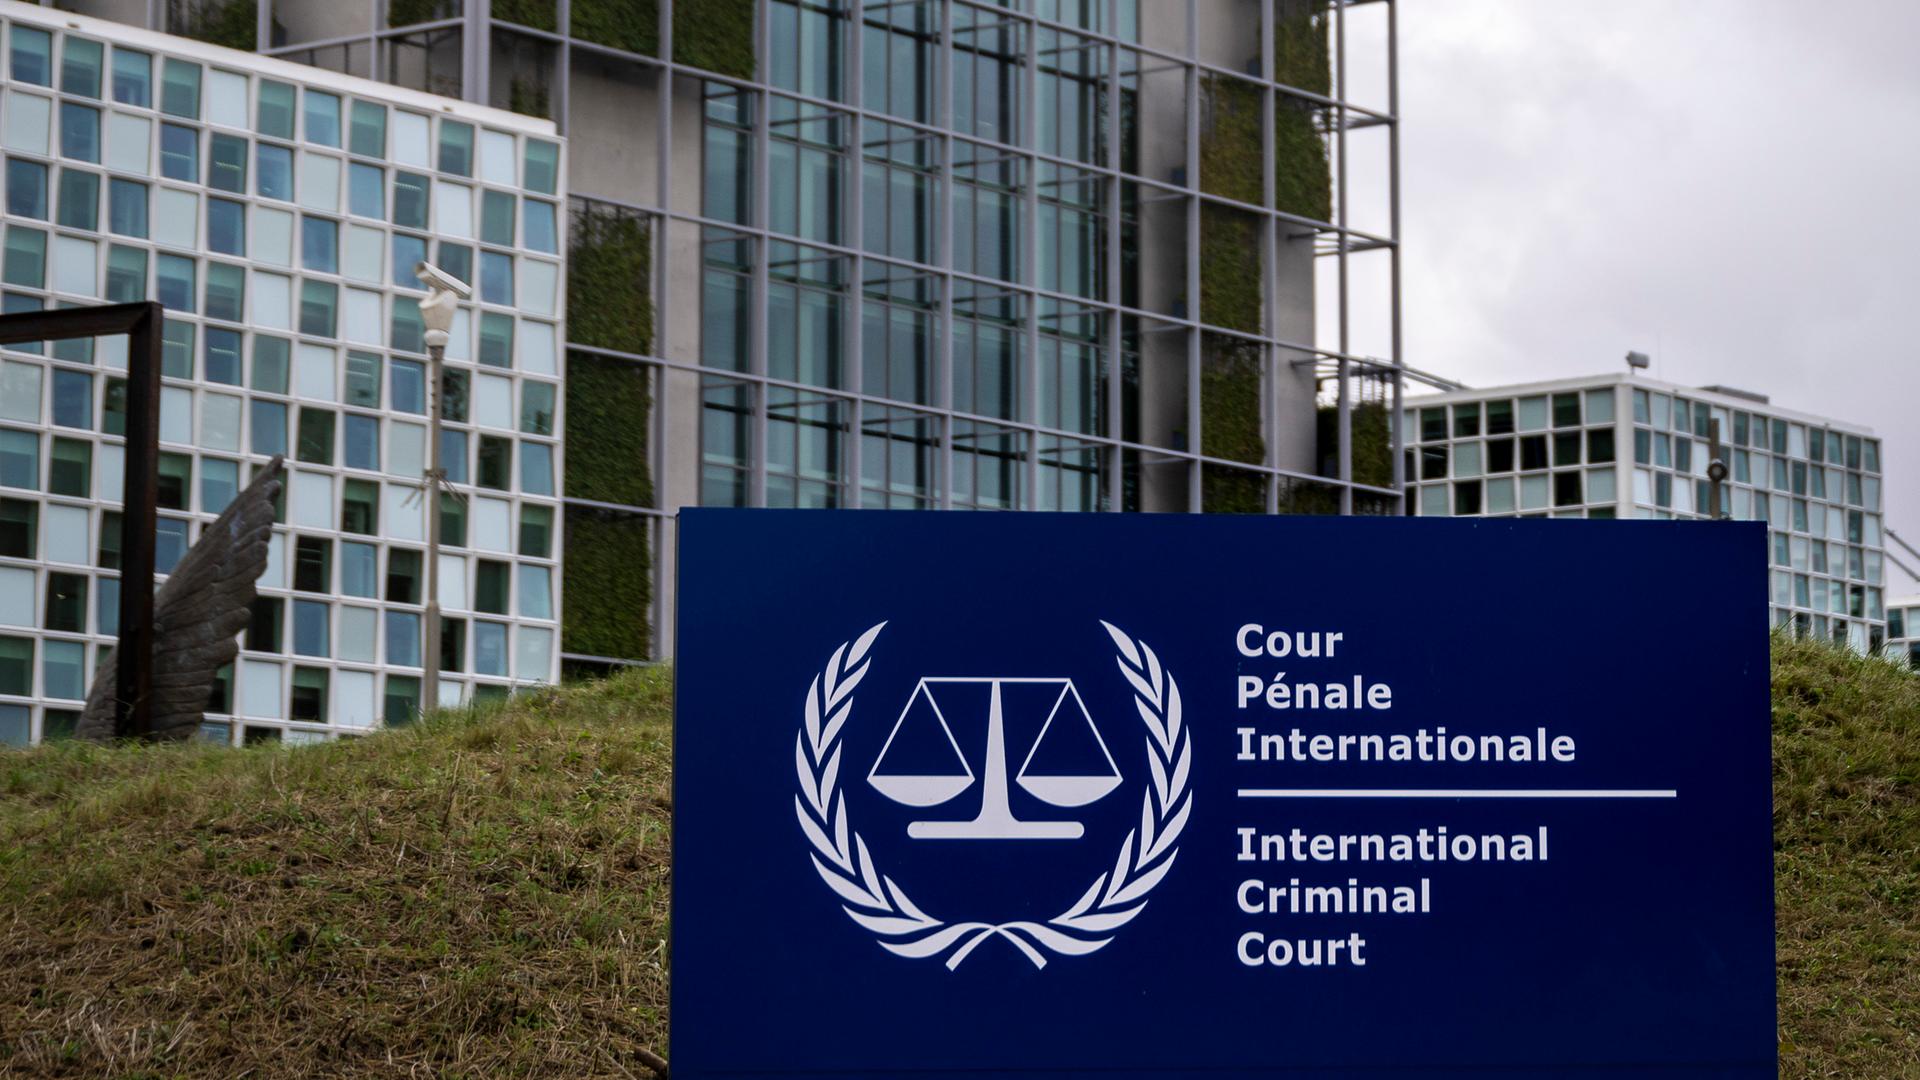 Der Sitz des Internationalen Strafgerichtshofs (IStGH) im Stadtteil Scheveningen von Den Haag (Niederlande).